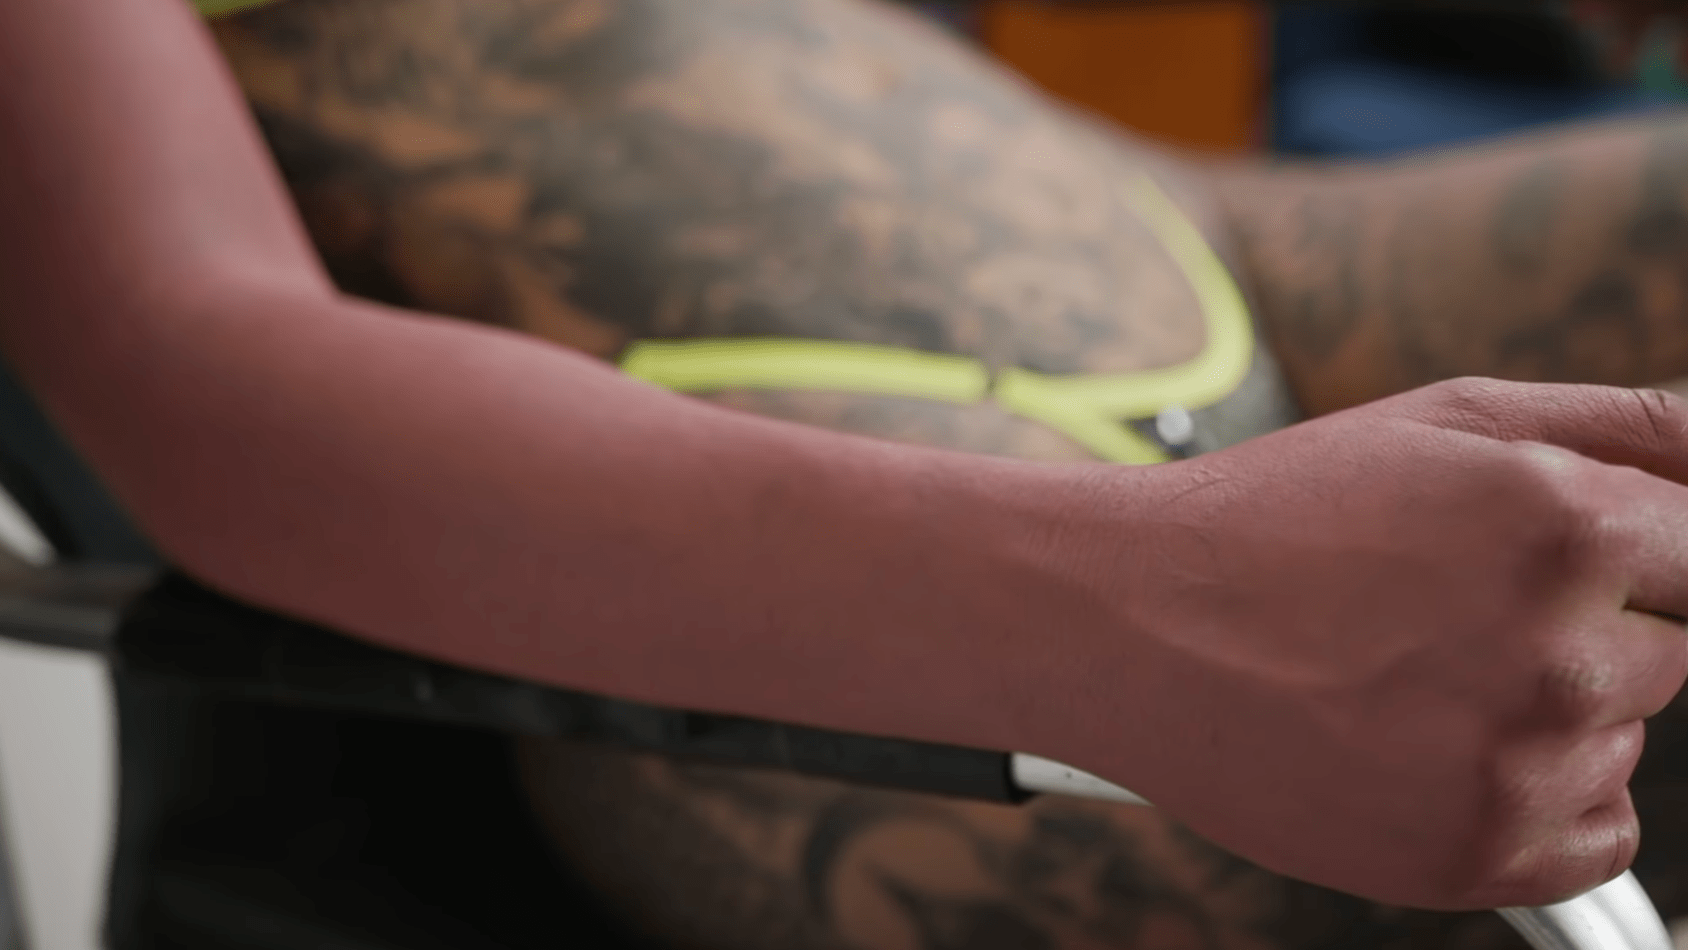 amber-luke-tattoos-volltaetowiert-experiment-ab7-min